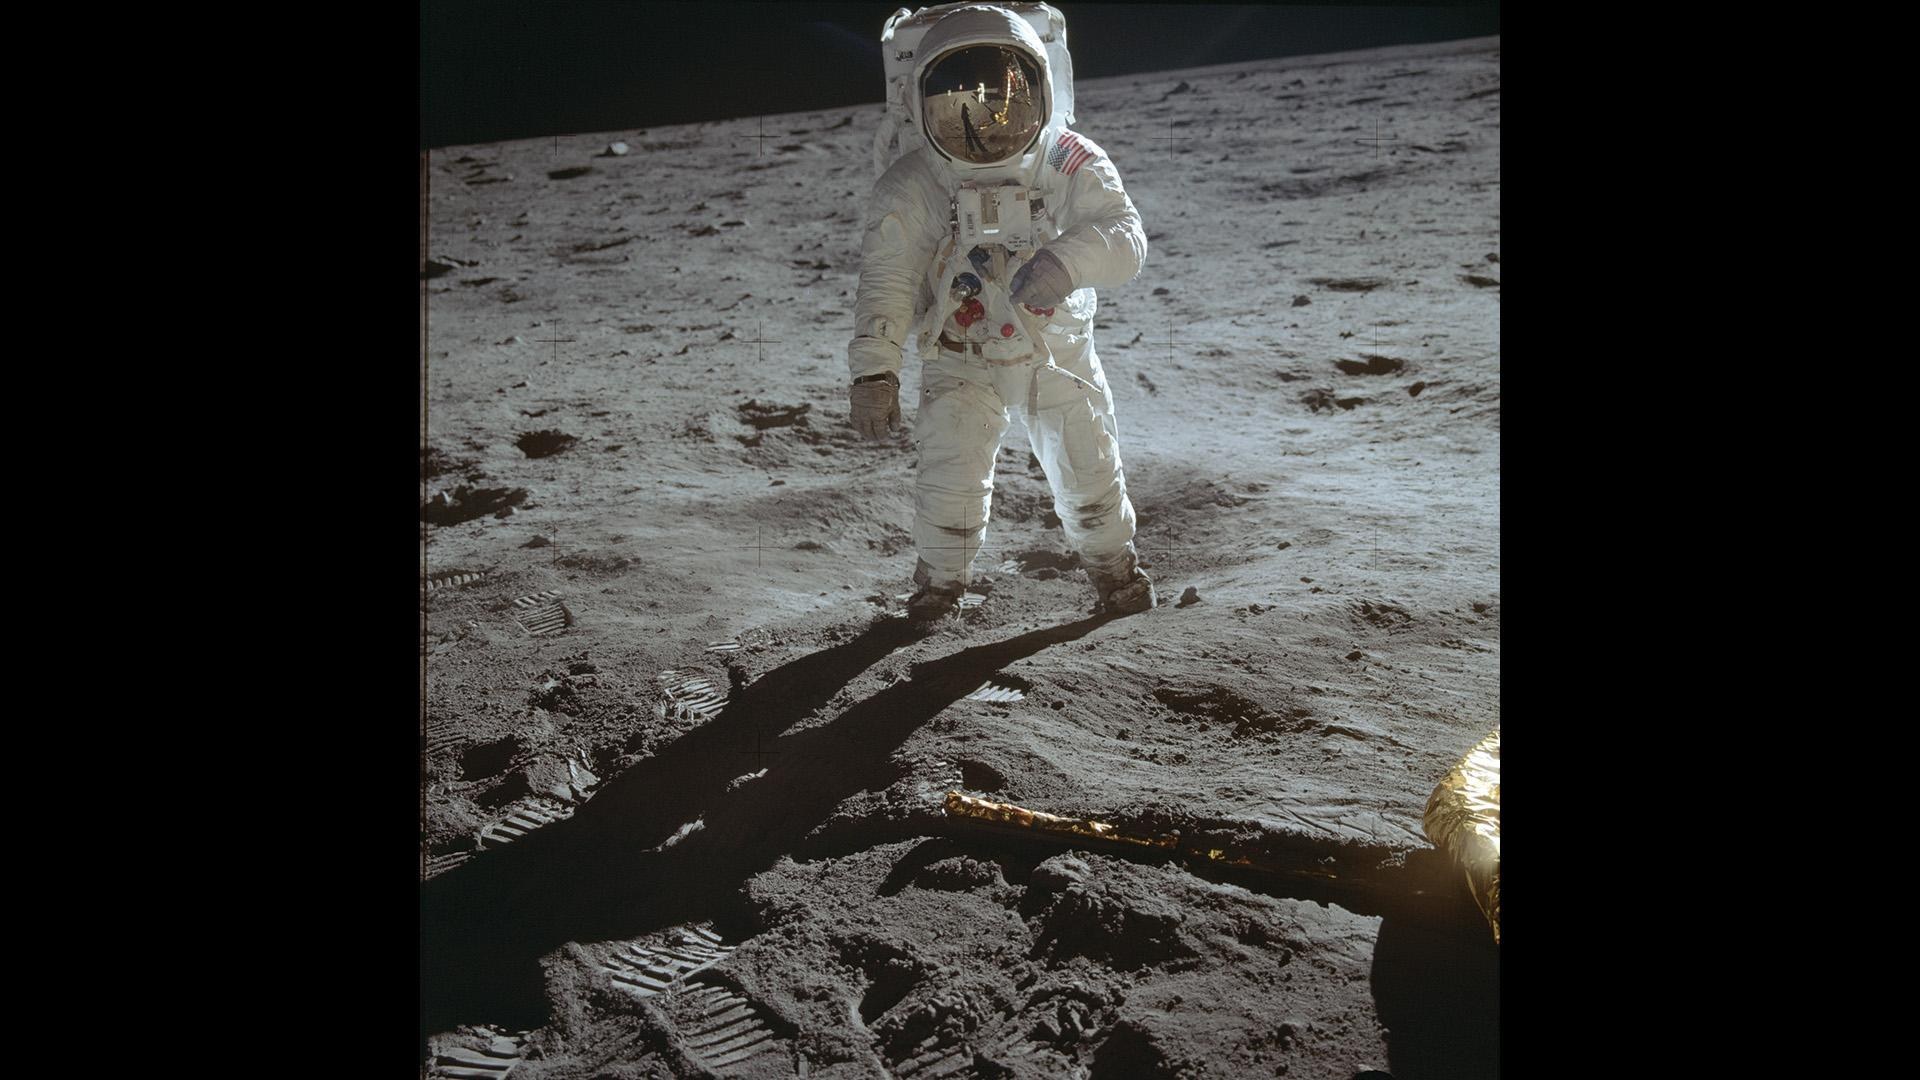 Das Bild zeigt die beiden ersten Menschen auf dem Mond: Aldrin, wie er vor Armstrong steht, und Armstrong, wie er sich im Moment der Aufnahme im Visier von Aldrin spiegelt.